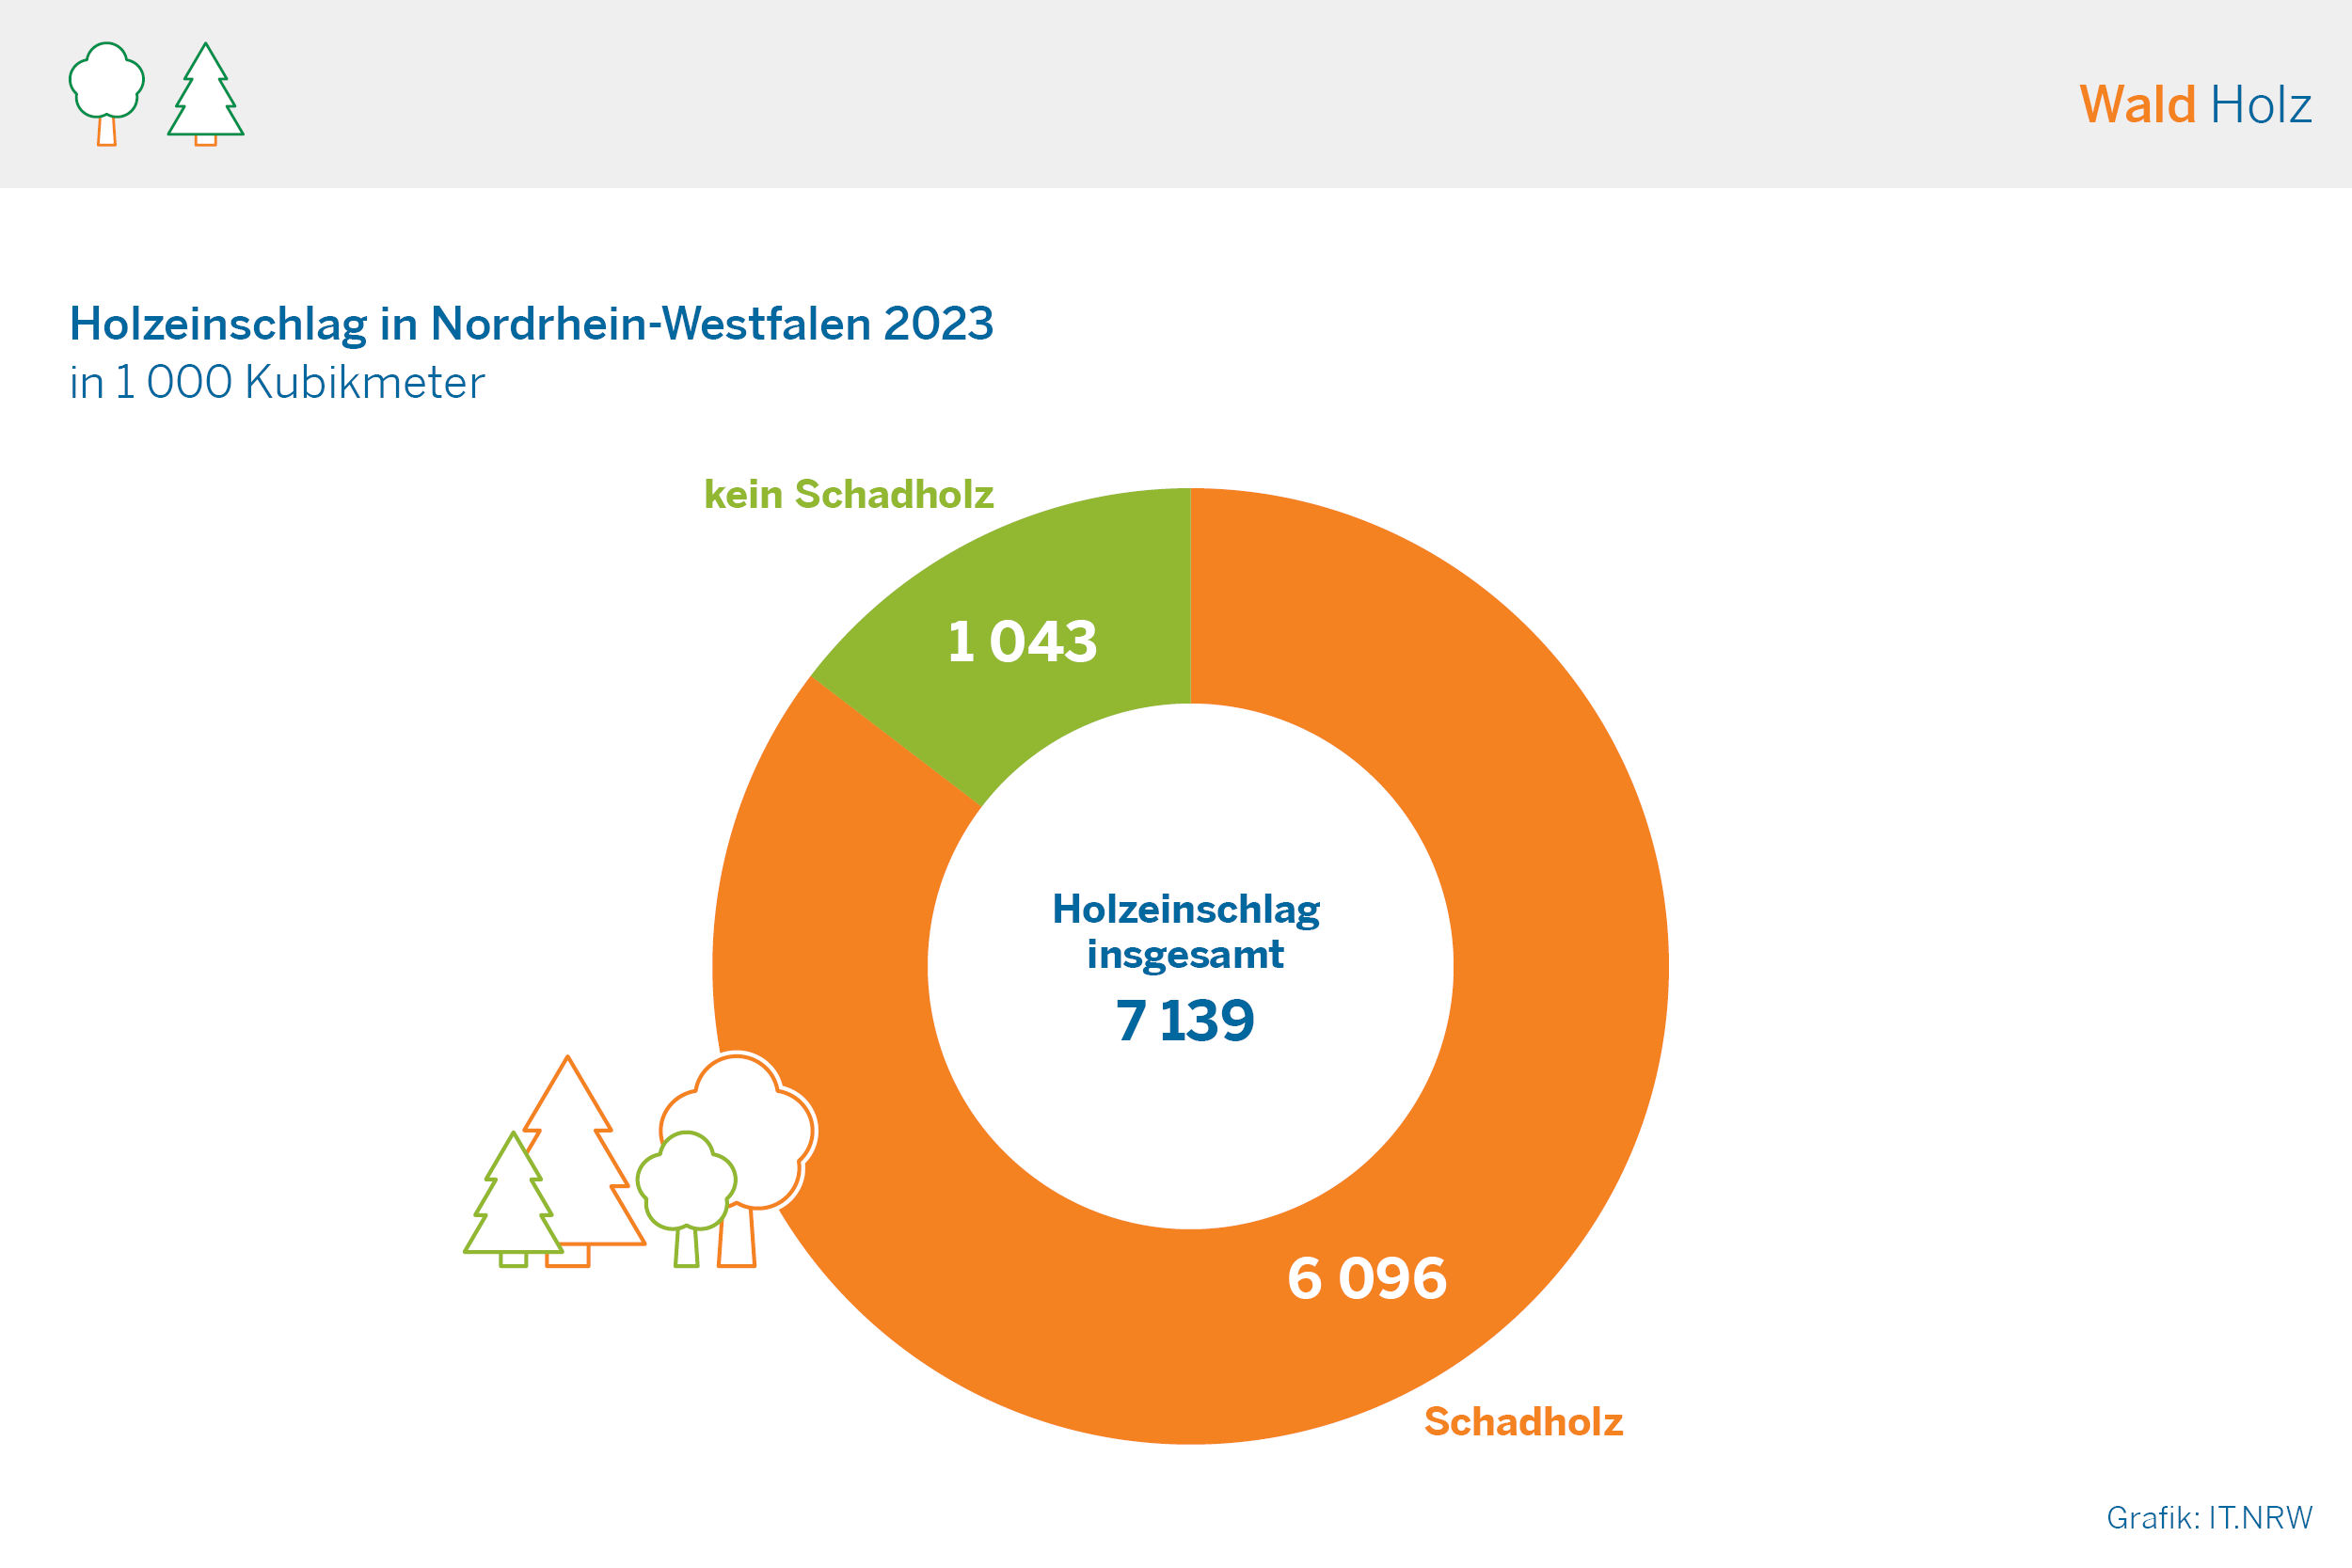 Holzeinschlag in Nordrhein-Westfalen 2023